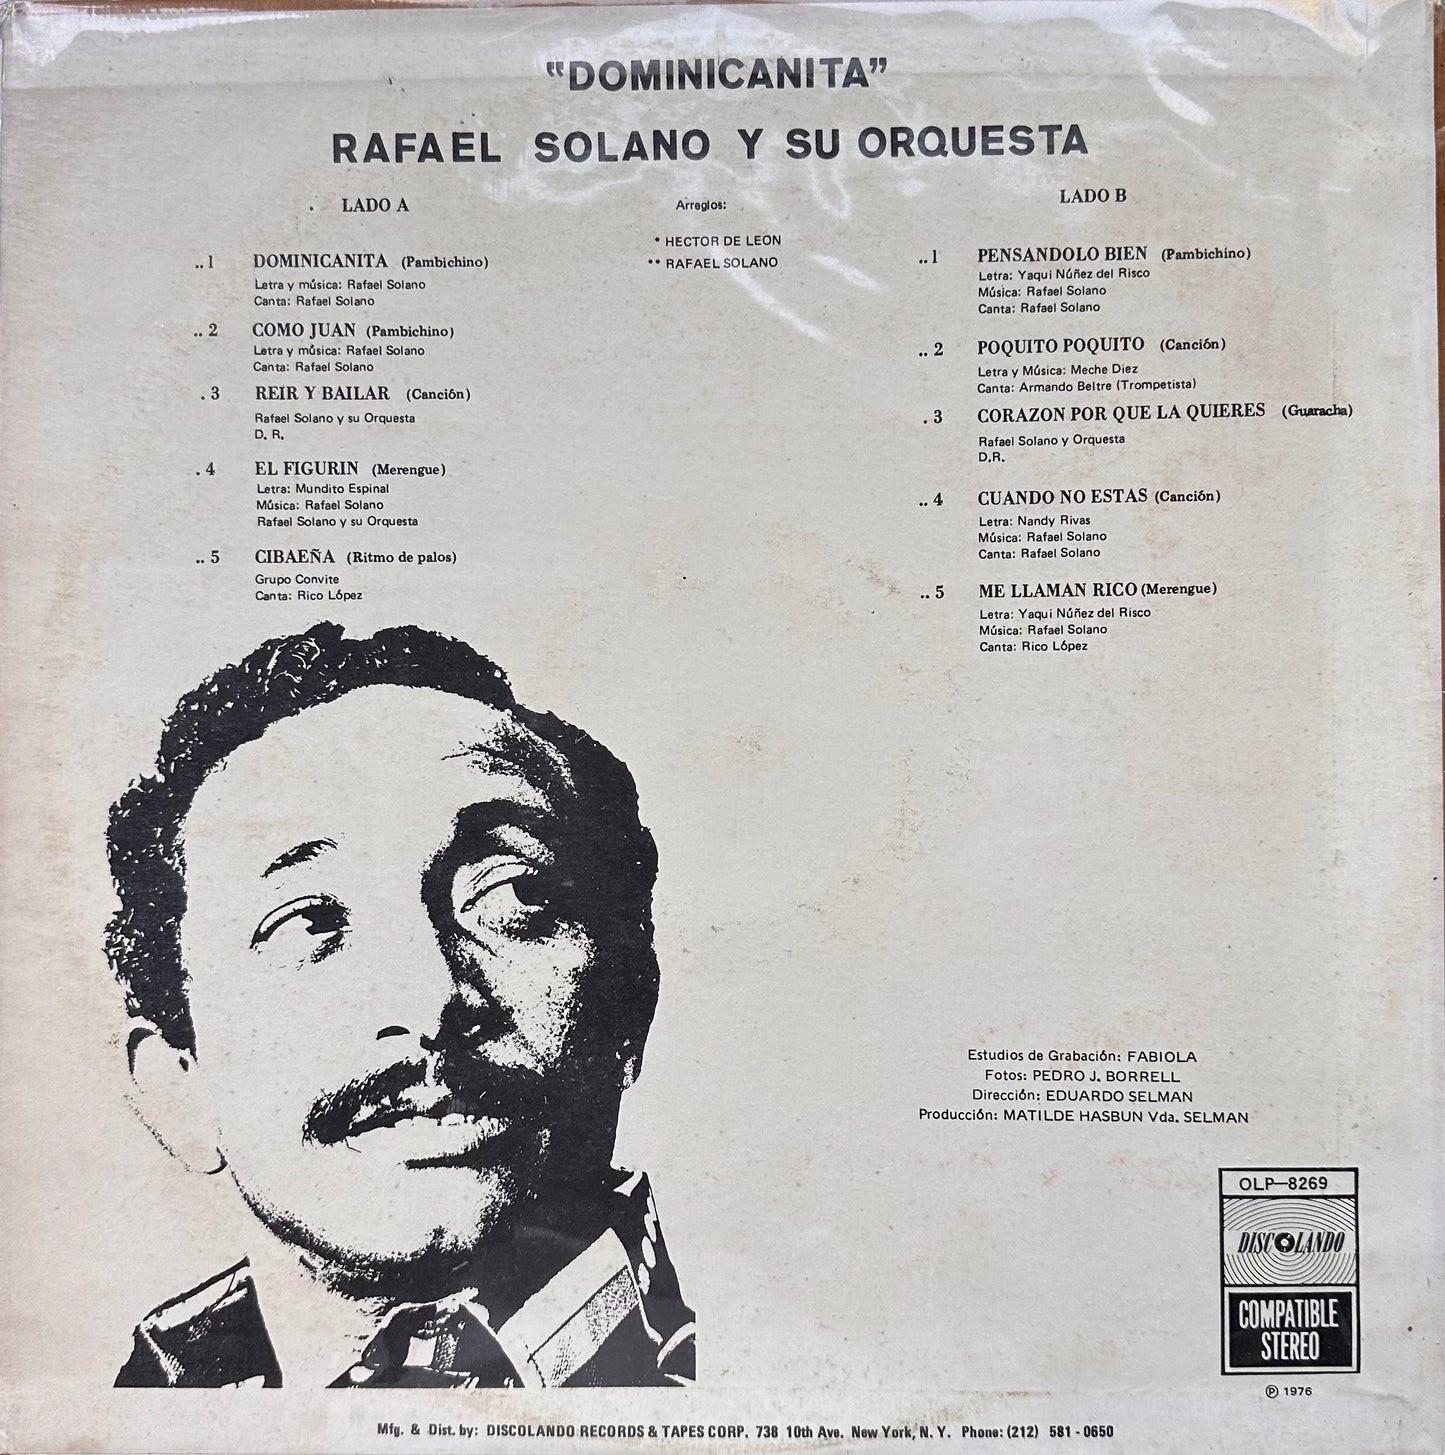 Dominicanita - Rafael Solano y su Orquesta